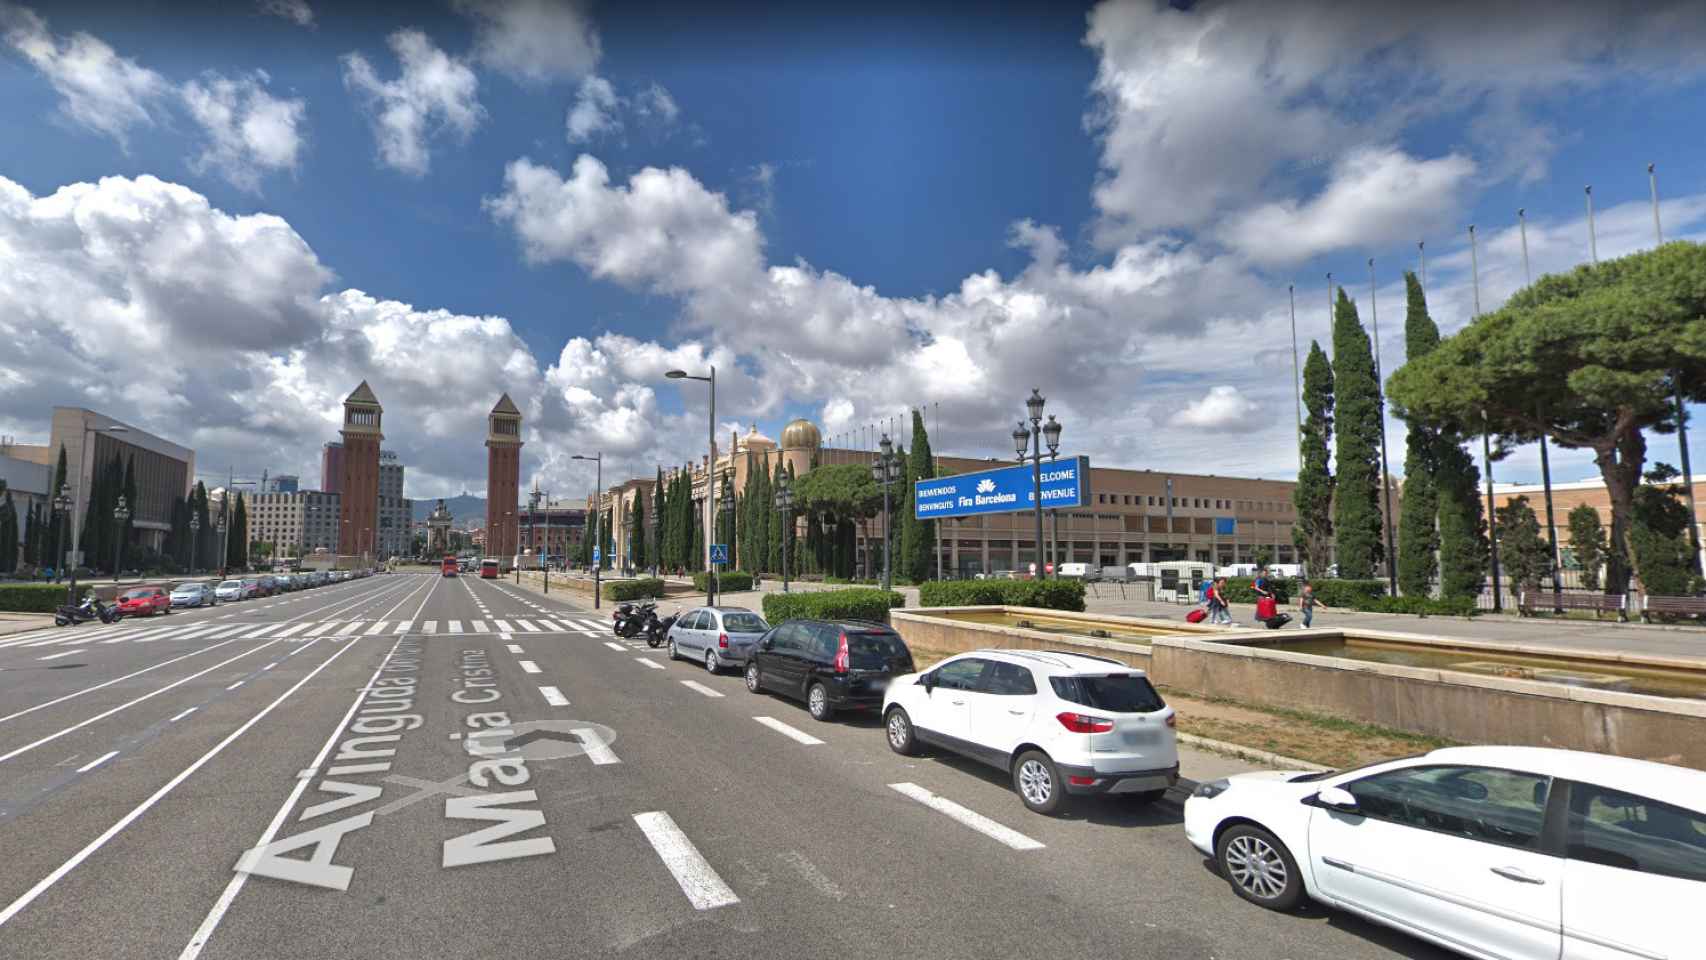 El recinto de la Fira de Barcelona de la avenida Maria Cristina / GOOGLE MAPS